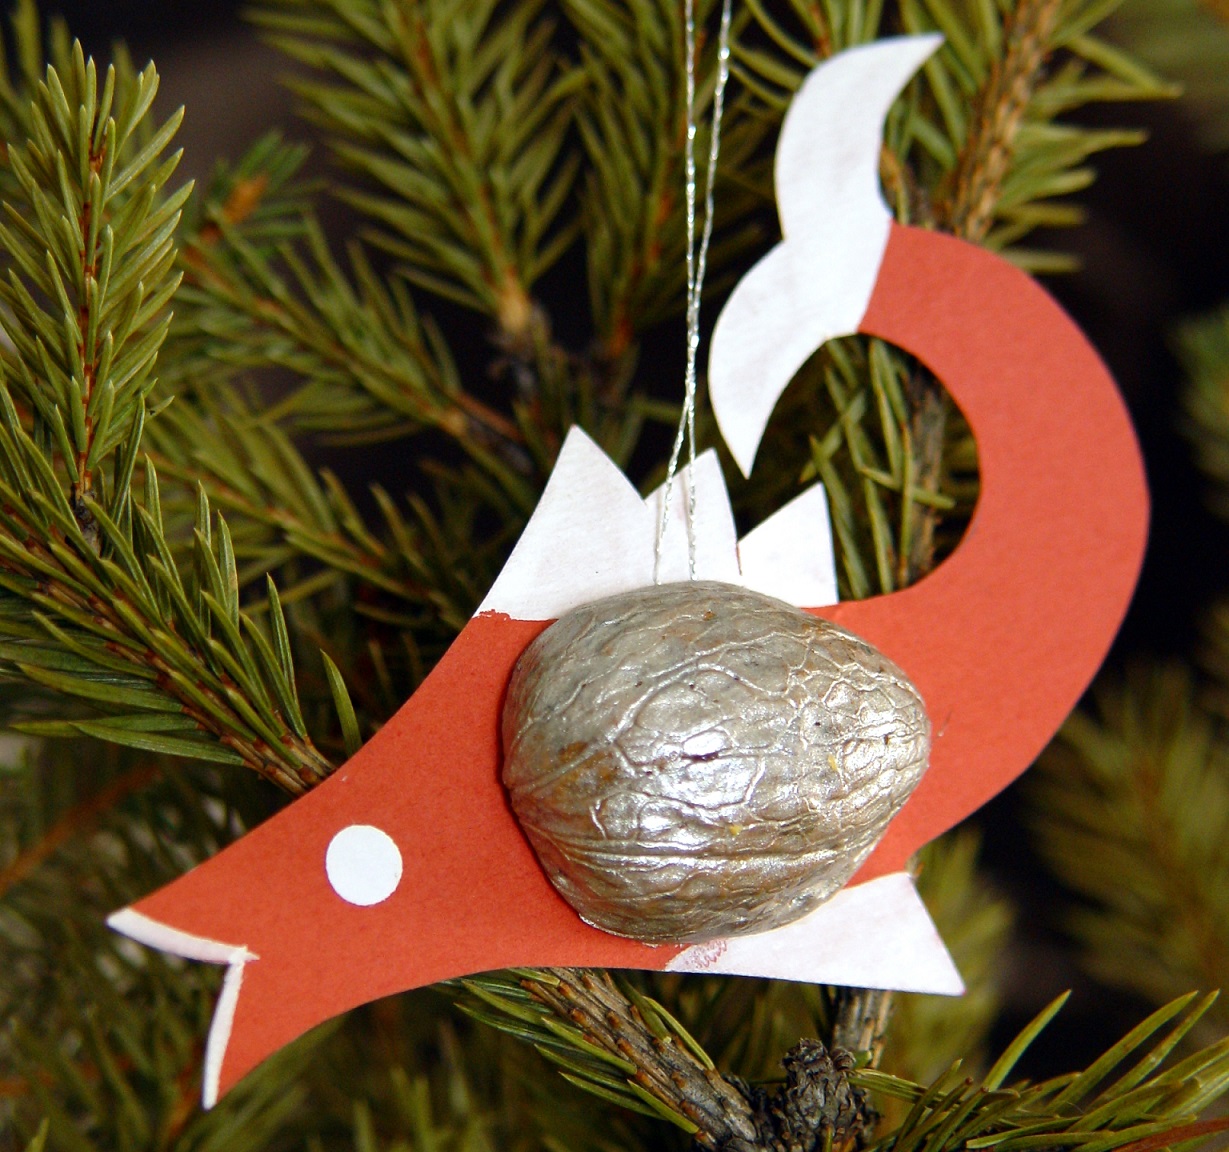 Warsztaty bożonarodzeniowe – tradycyjne ozdoby świąteczne na choinkę. Gliwice